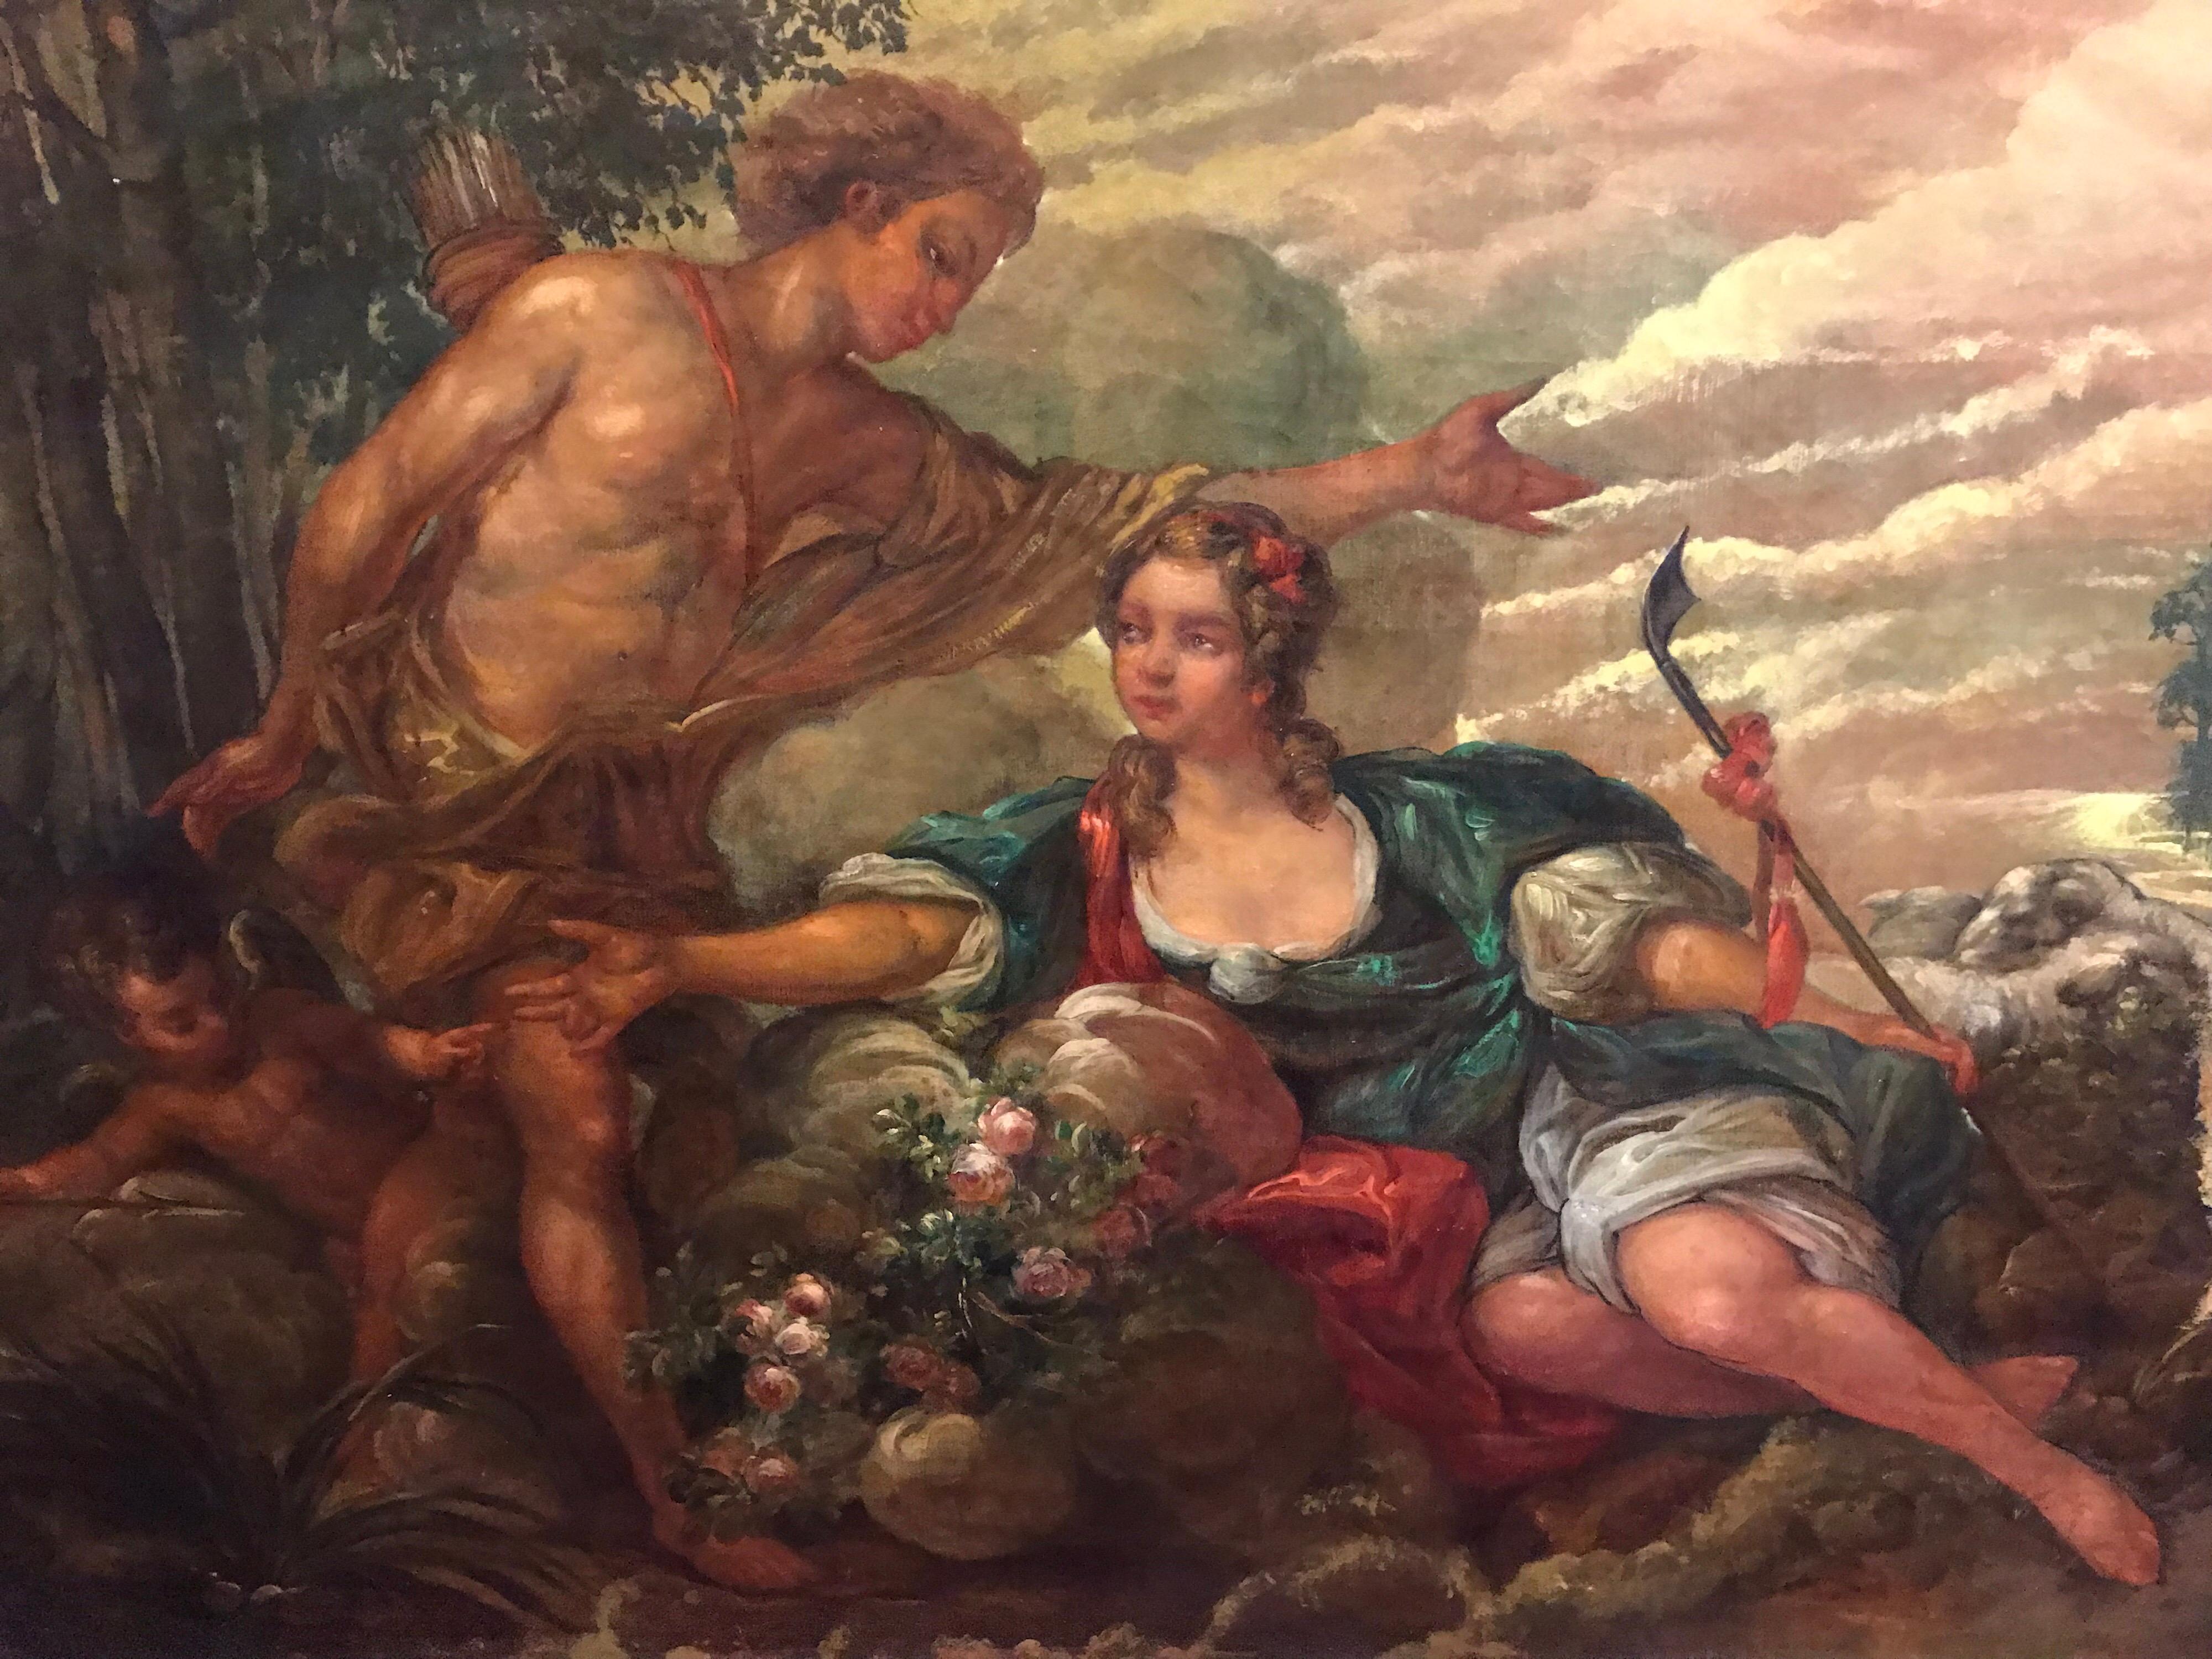 Grande peinture à l'huile rococo française ancienne - Lovers mythologiques dans un paysage